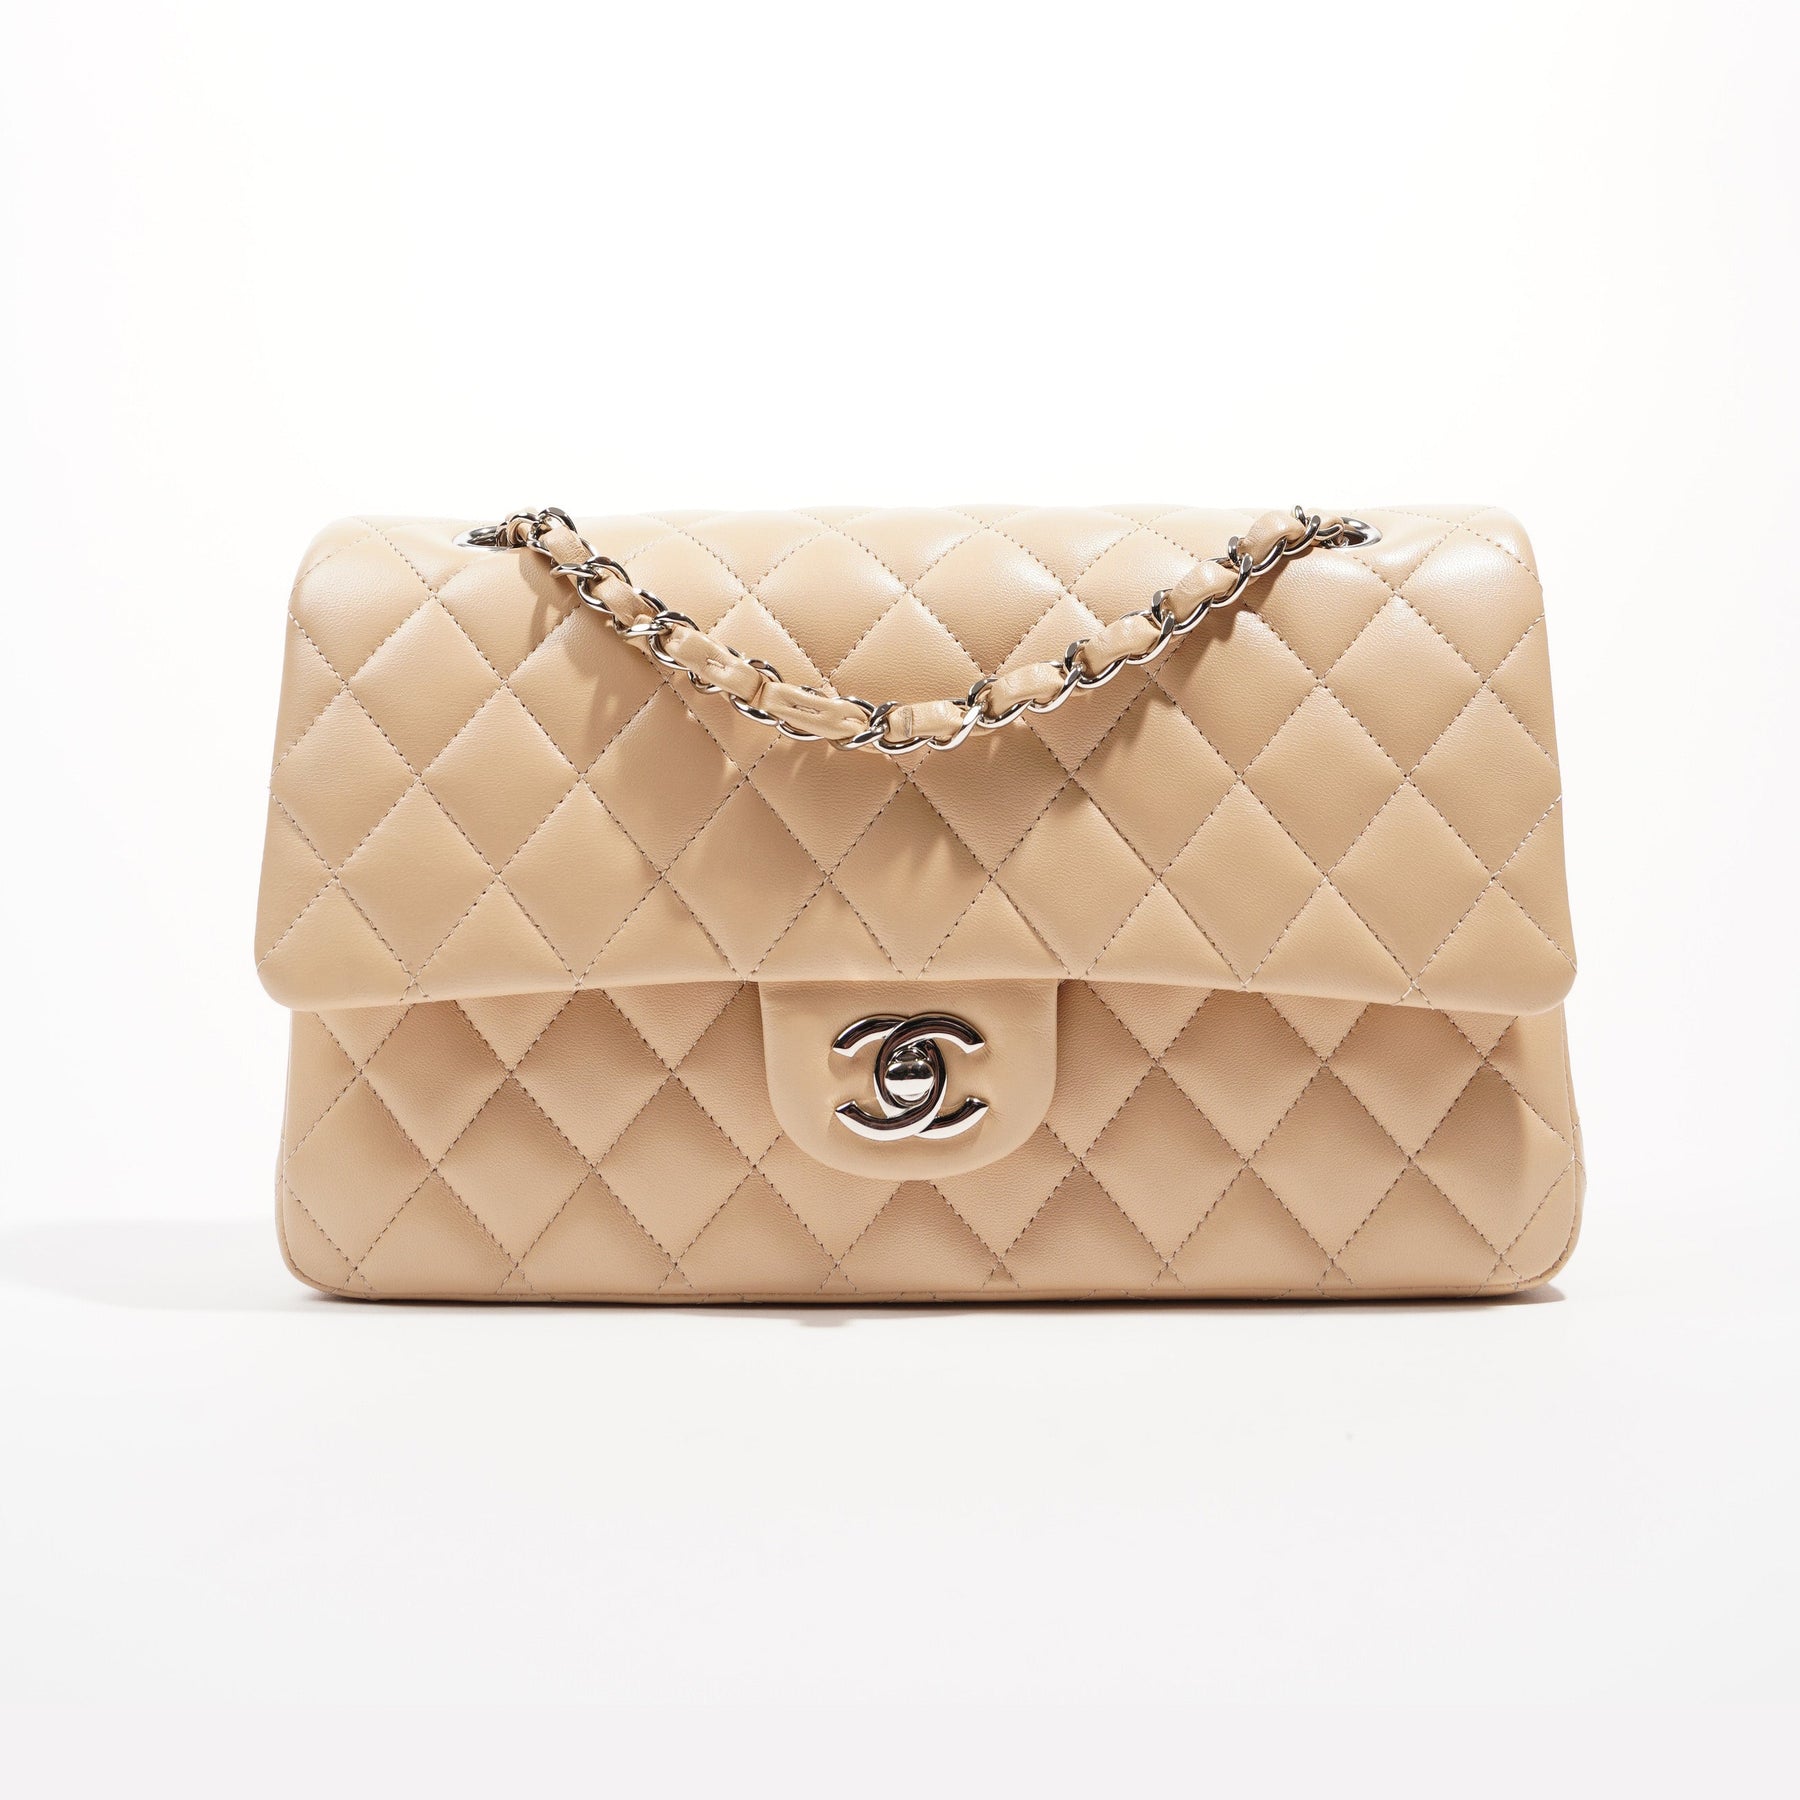 Vintage Lux Chanel Beige Double-Flap Classic Bag, Chanel classic medium  double flap bag in beige lambskin …